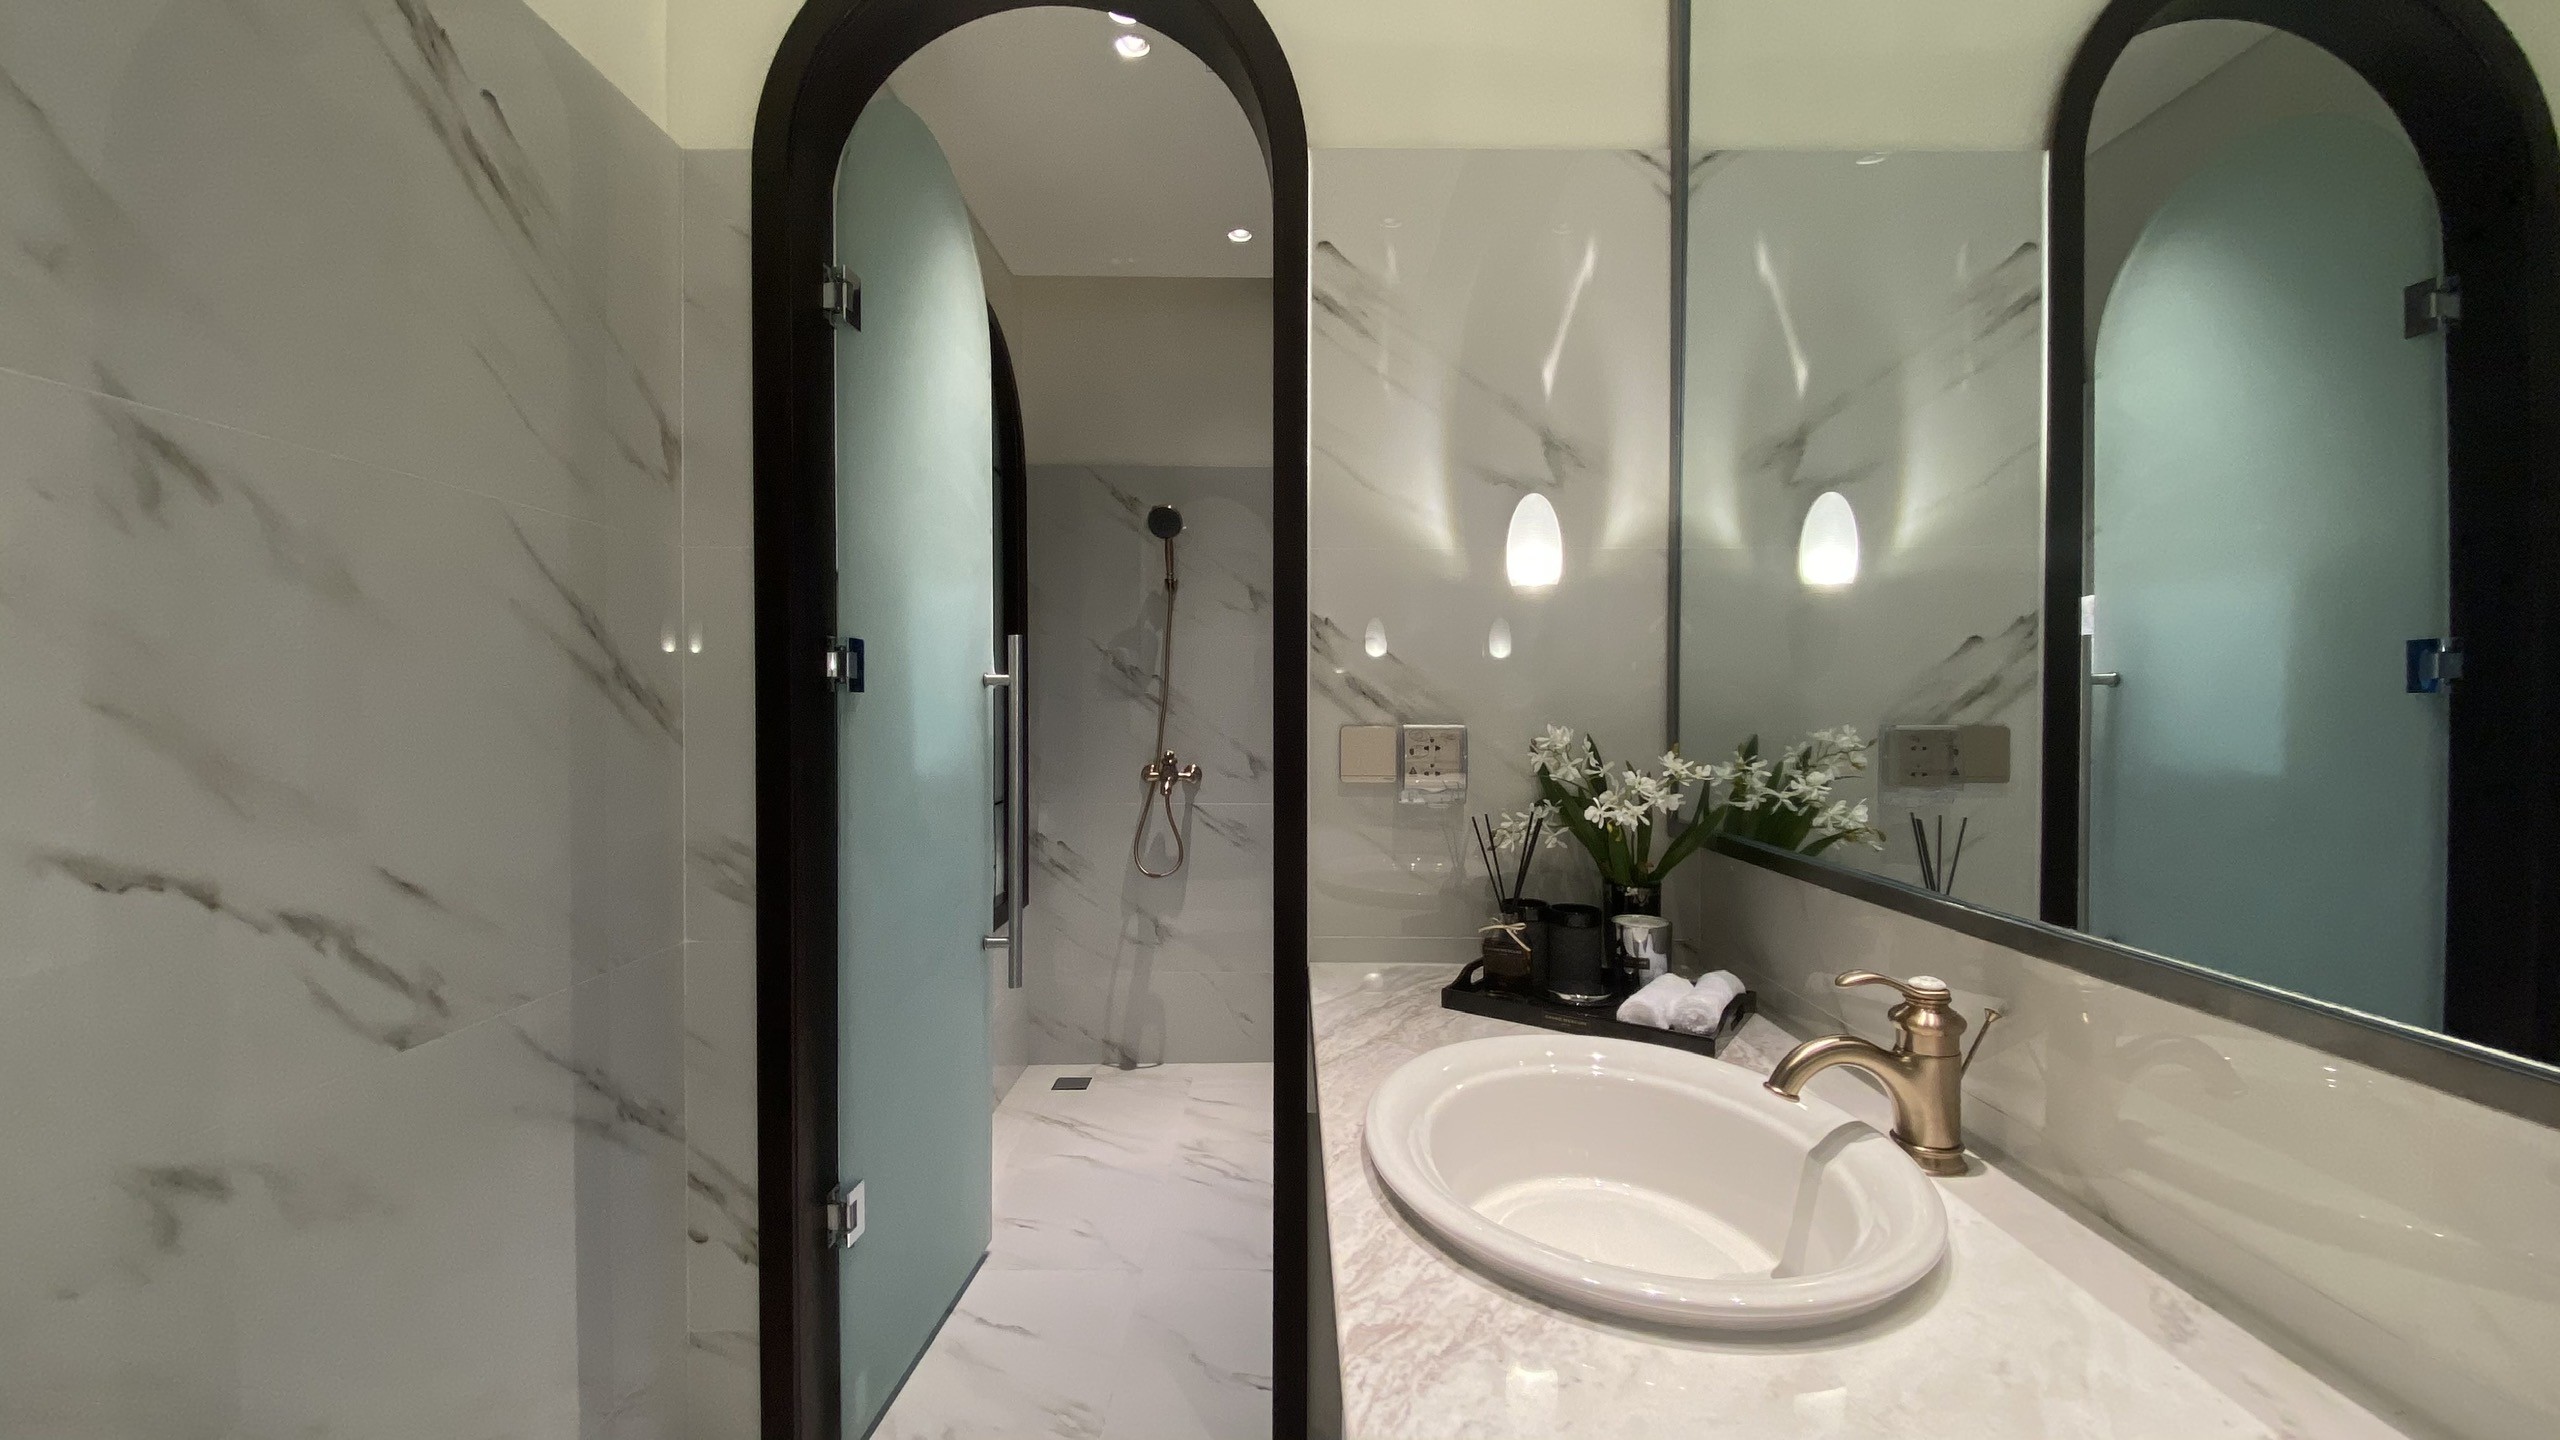 
Nhà vệ sinh trong biệt thự cũng mang tiêu chuẩn 5 sao với các vật liệu hoàn thiện chất lượng cao
